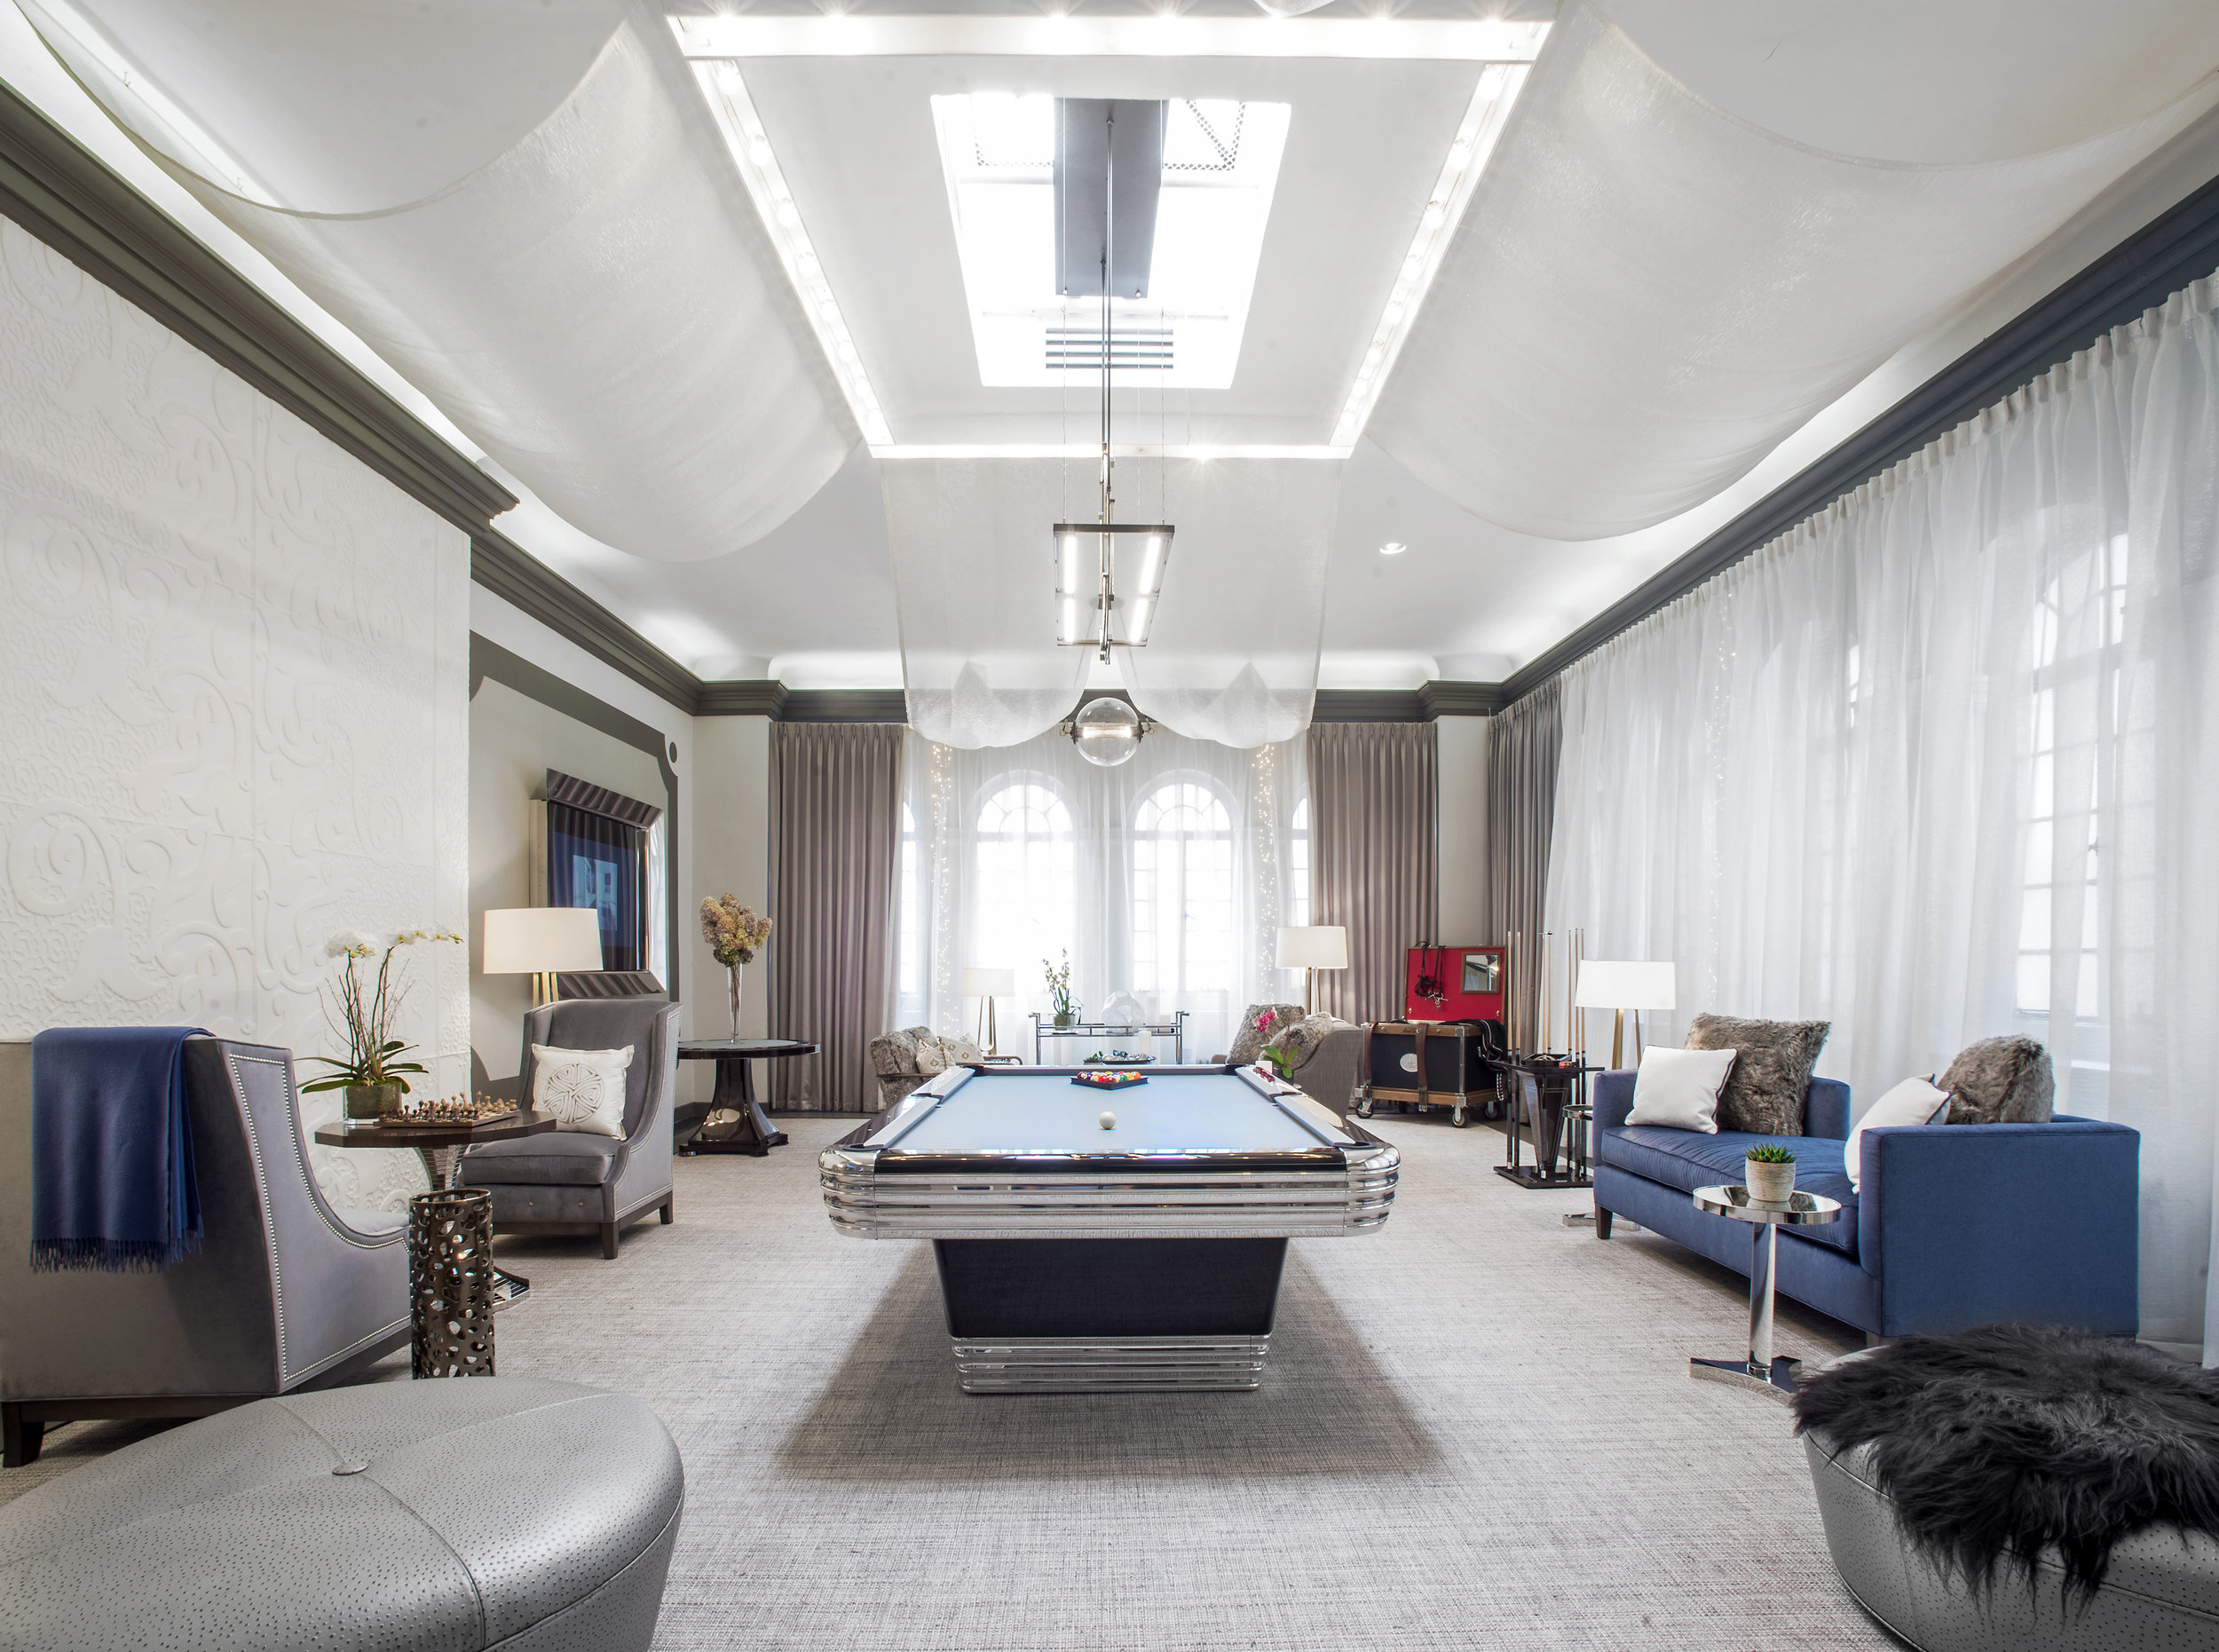 Luxury Billiard Room by Andrew Werner.jpg